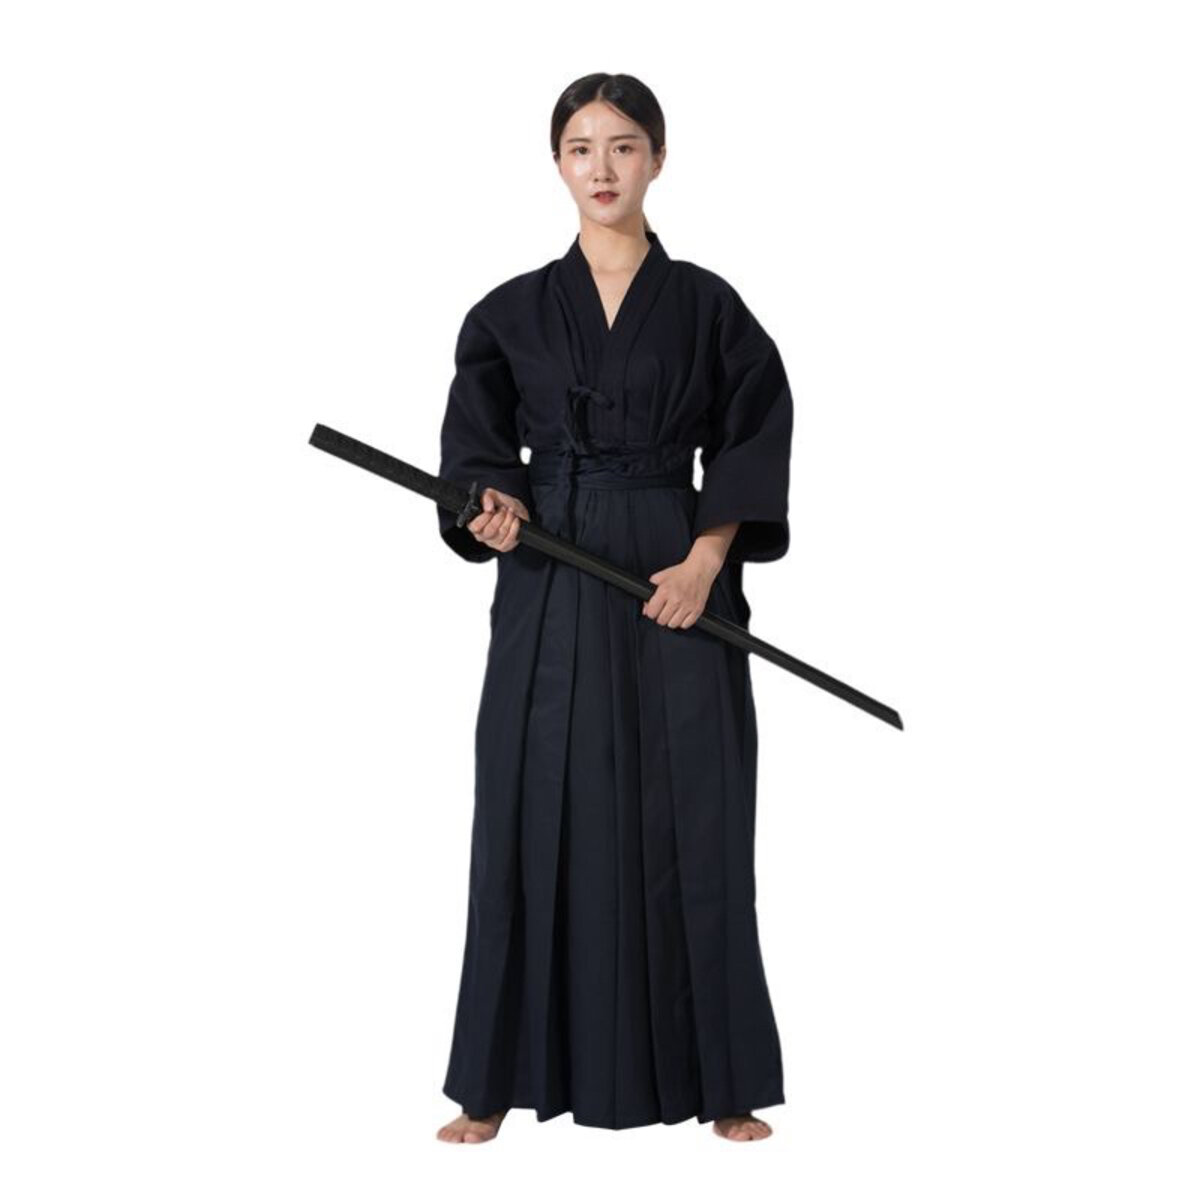 Mẫu đồng phục Kendo - Váy dài truyền thống